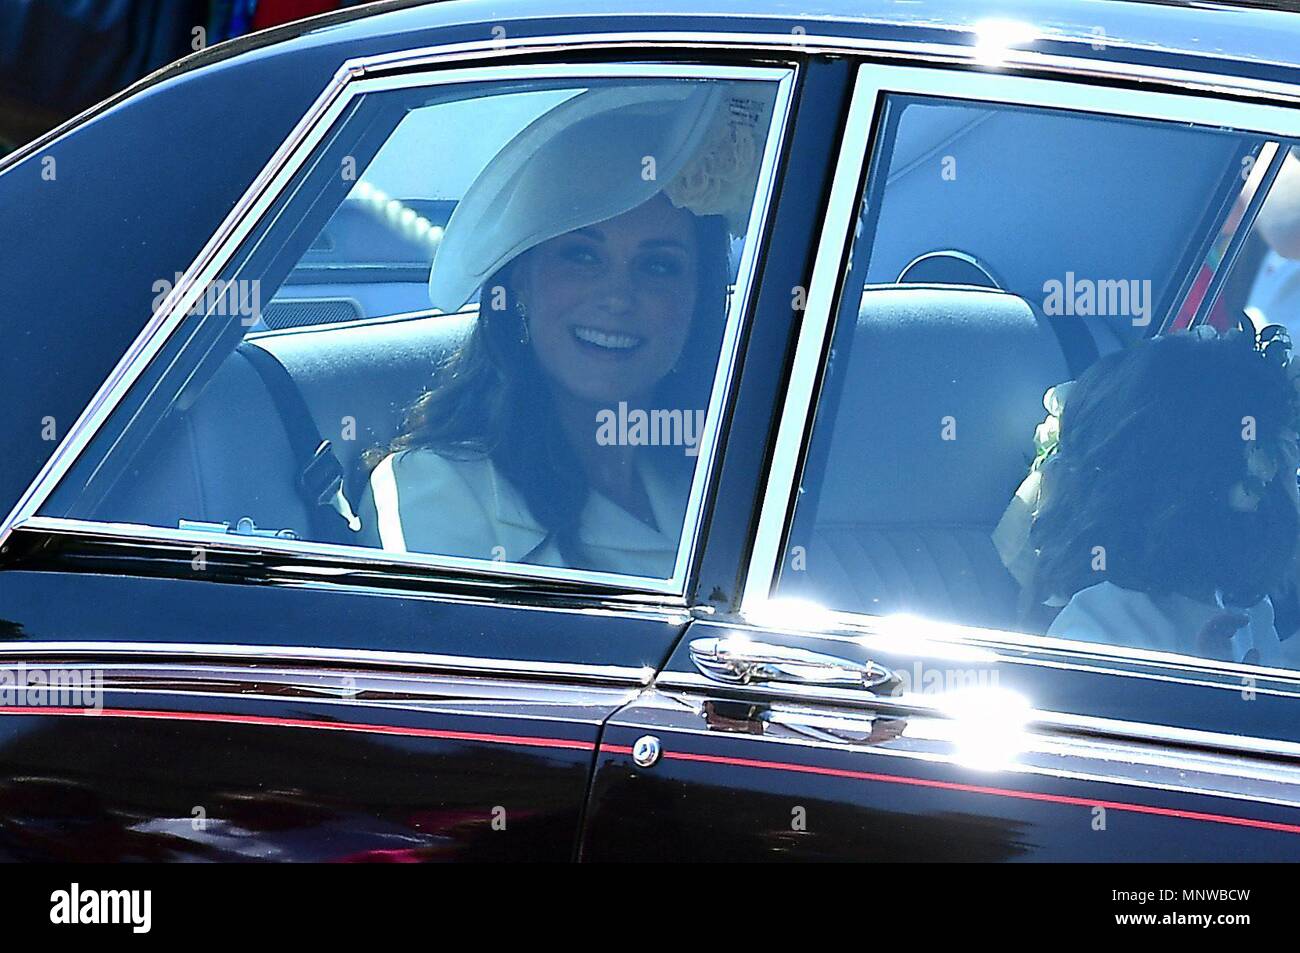 (180519) -- WINDSOR, mayo 19, 2018 (Xinhua) -- Catalina, duquesa de Cambridge, llega a la capilla de San Jorge en el Castillo de Windsor para asistir a la boda del prÃncipe Enrique y su prometida Meghan Markle, en Windsor, Reino Unido, el 19 de mayo de 2018.  Cordon Press Stock Photo